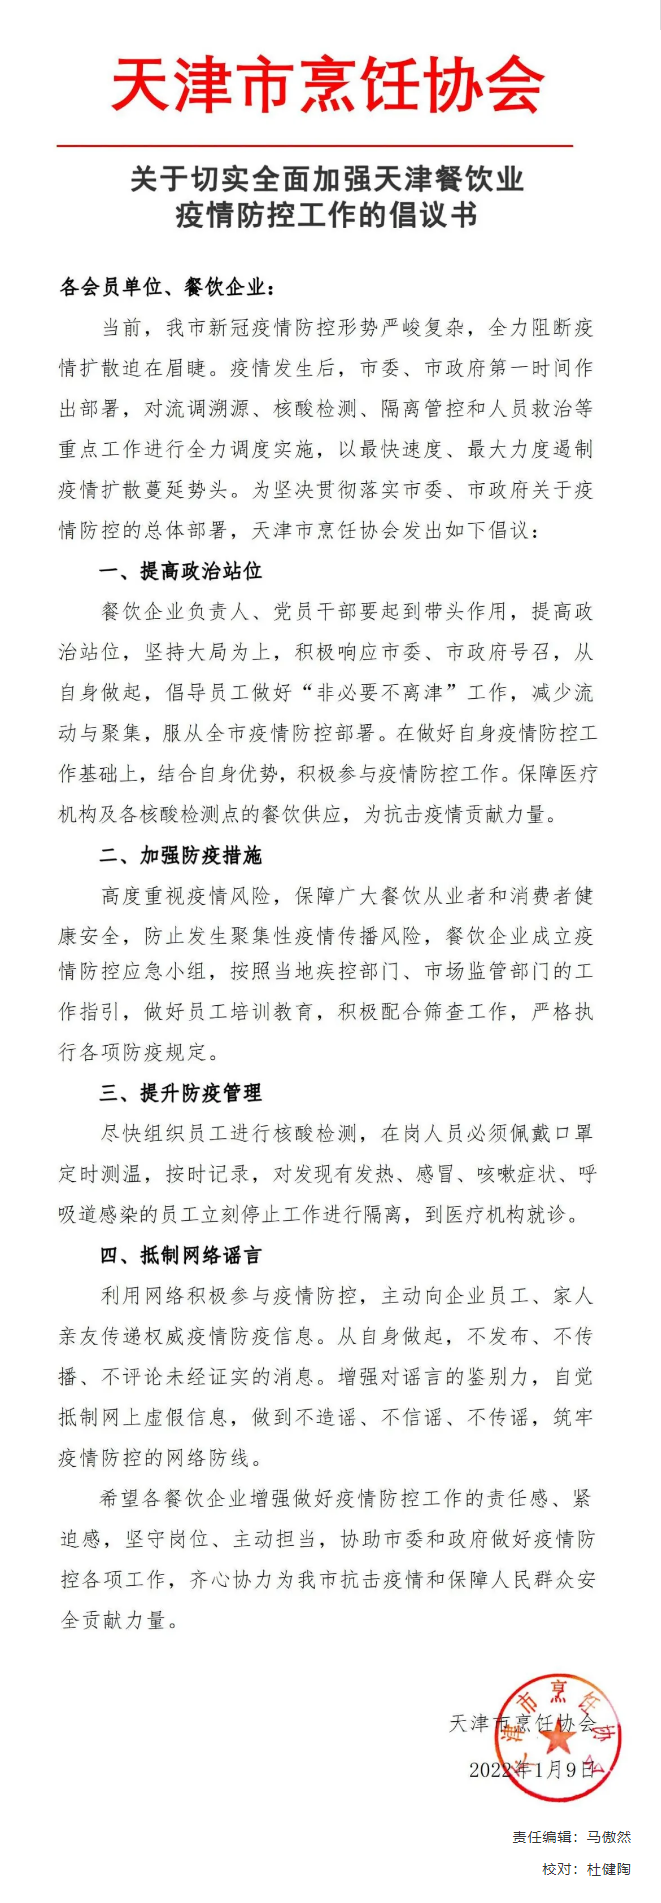 公告通知_关于切实全面加强天津餐饮业疫情防控工作的倡议书.png